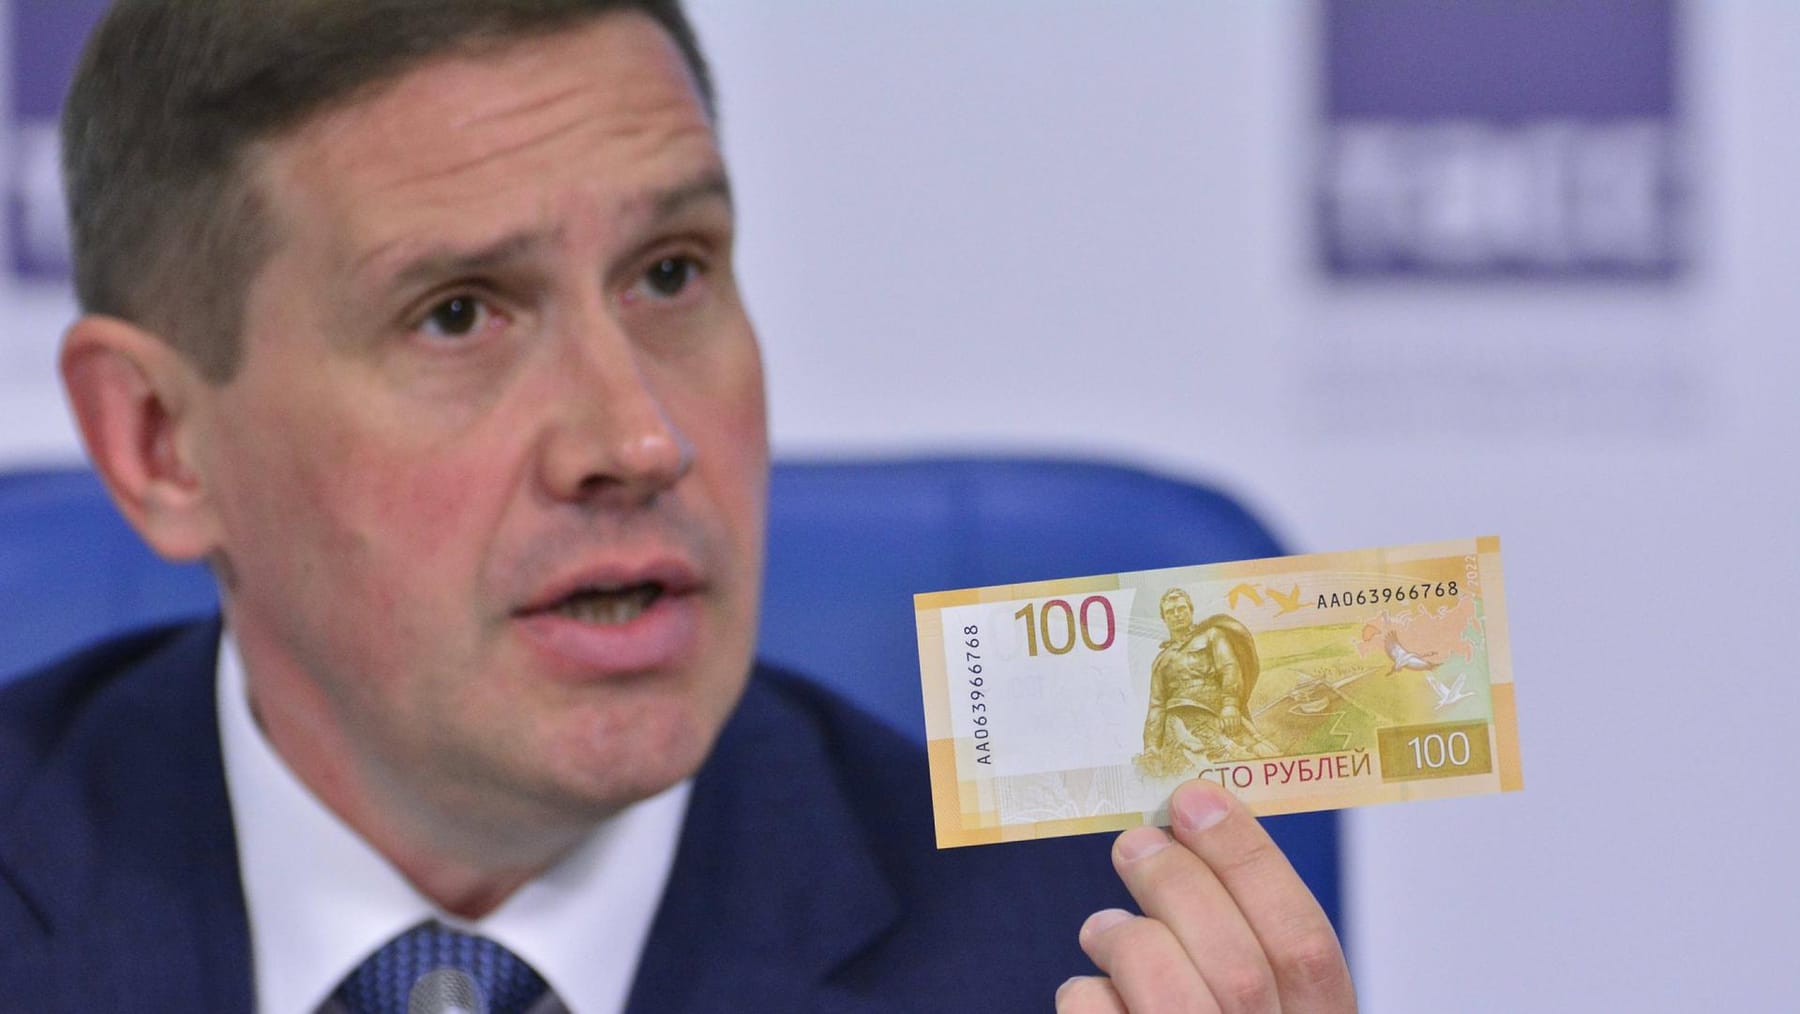 Die neue Stückelung von 100 Rubel kann in Russland nicht zurückgezogen werden